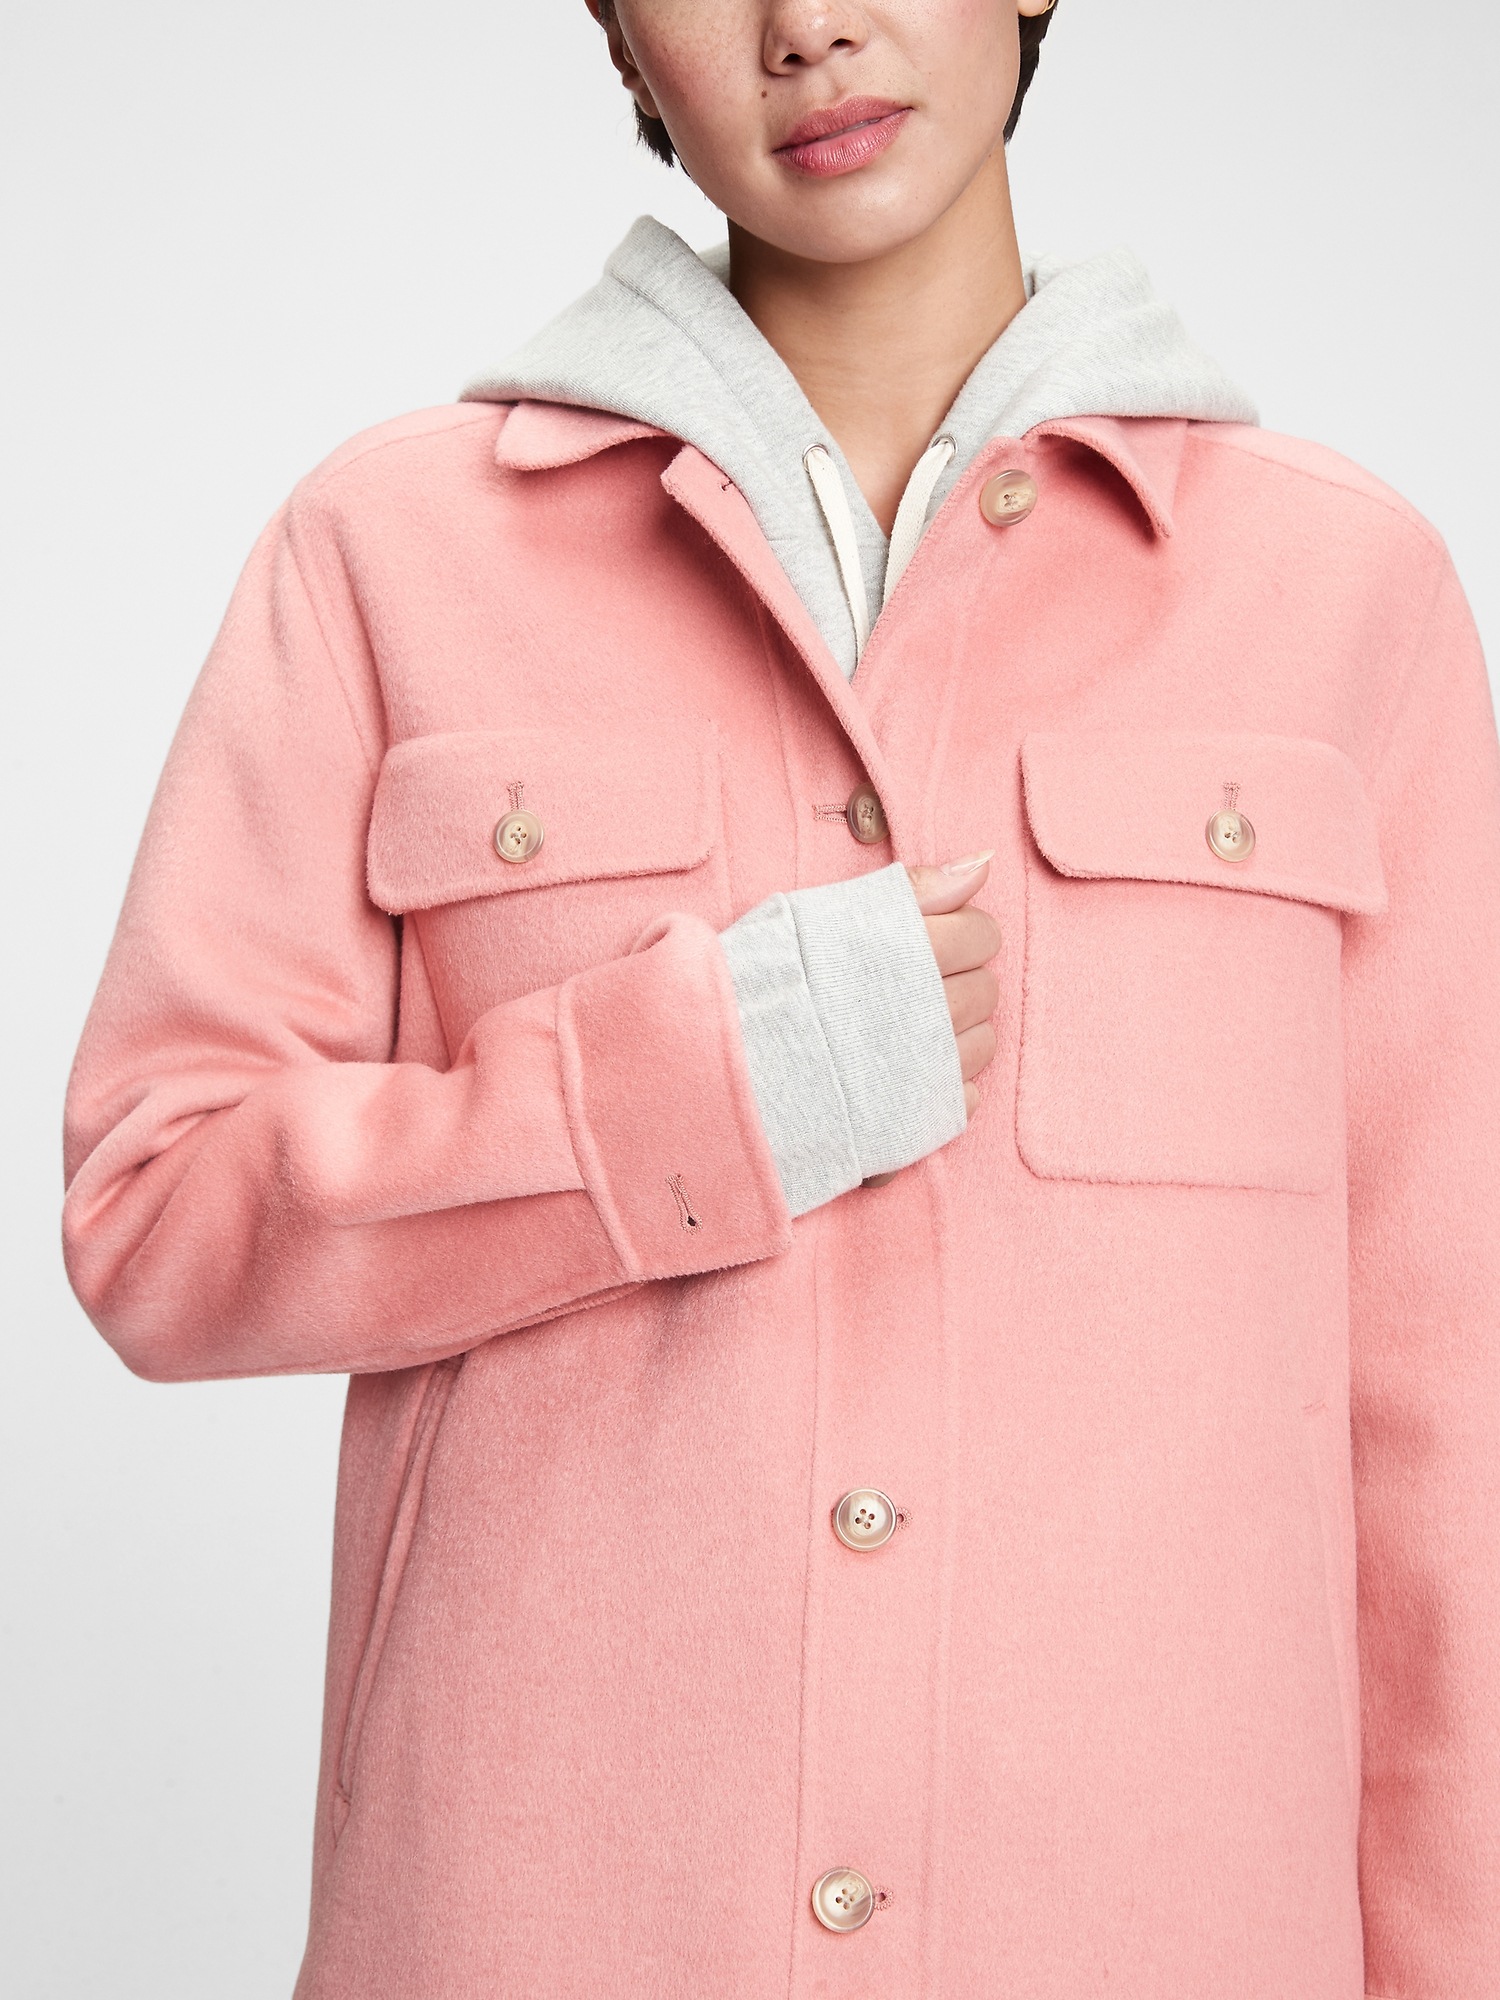 gap pink jacket